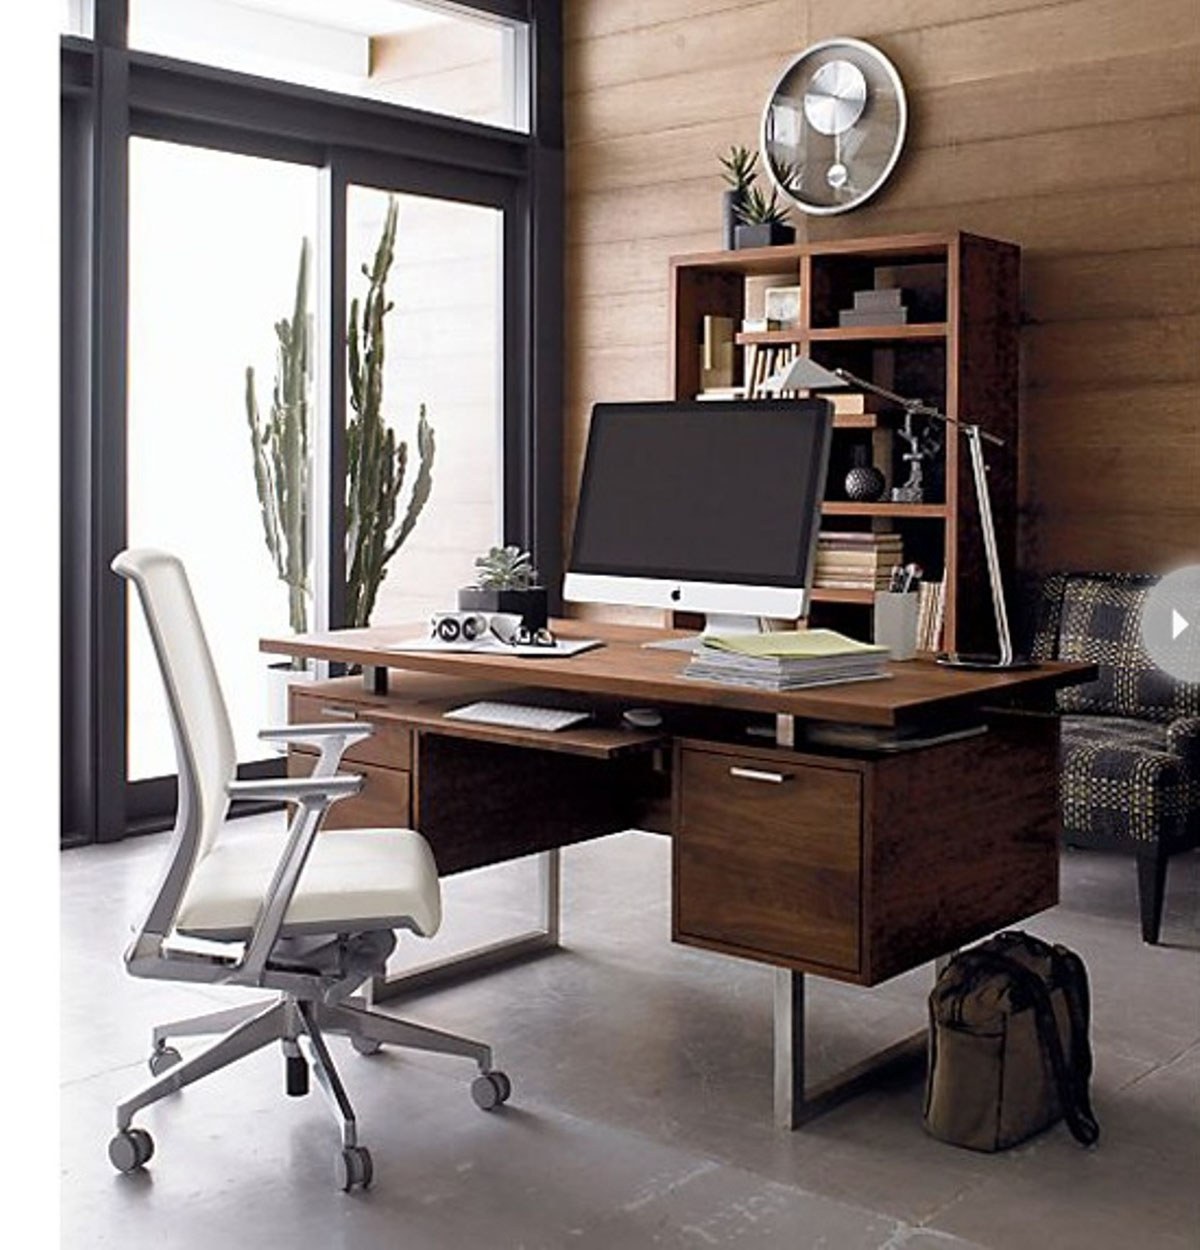 Столик для офиса. Домашний офис. Интерьер рабочего кабинета. Интерьер домашнего кабинета. Стол для кабинета домашнего.